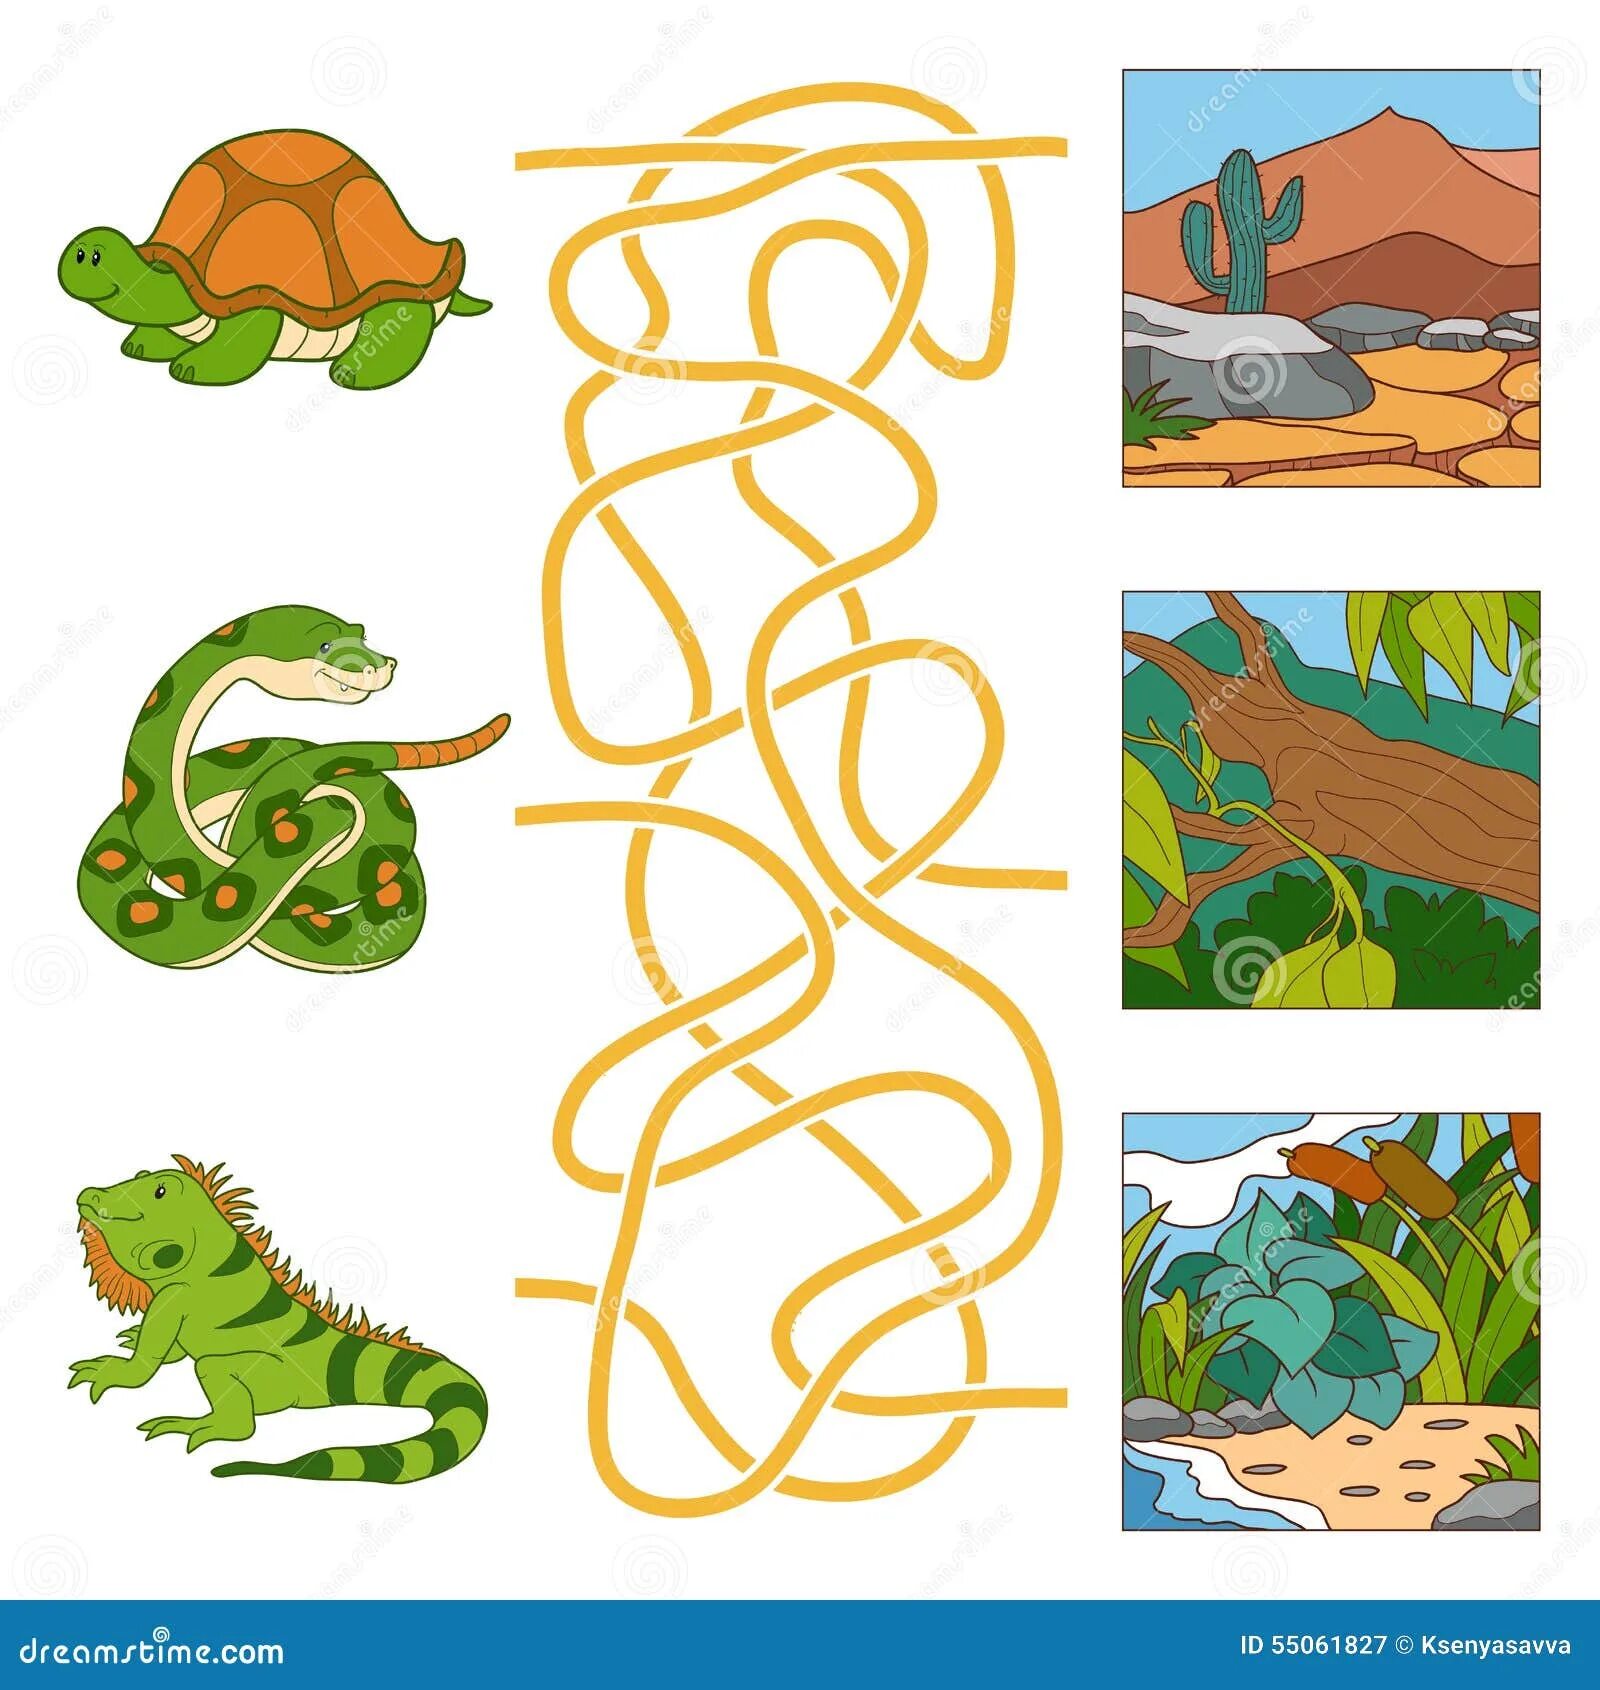 Задания про змей. Игра "Лабиринт змейка". Пресмыкающиеся задания для дошкольников. Рептилии задания для детей. Змея задания для детей.